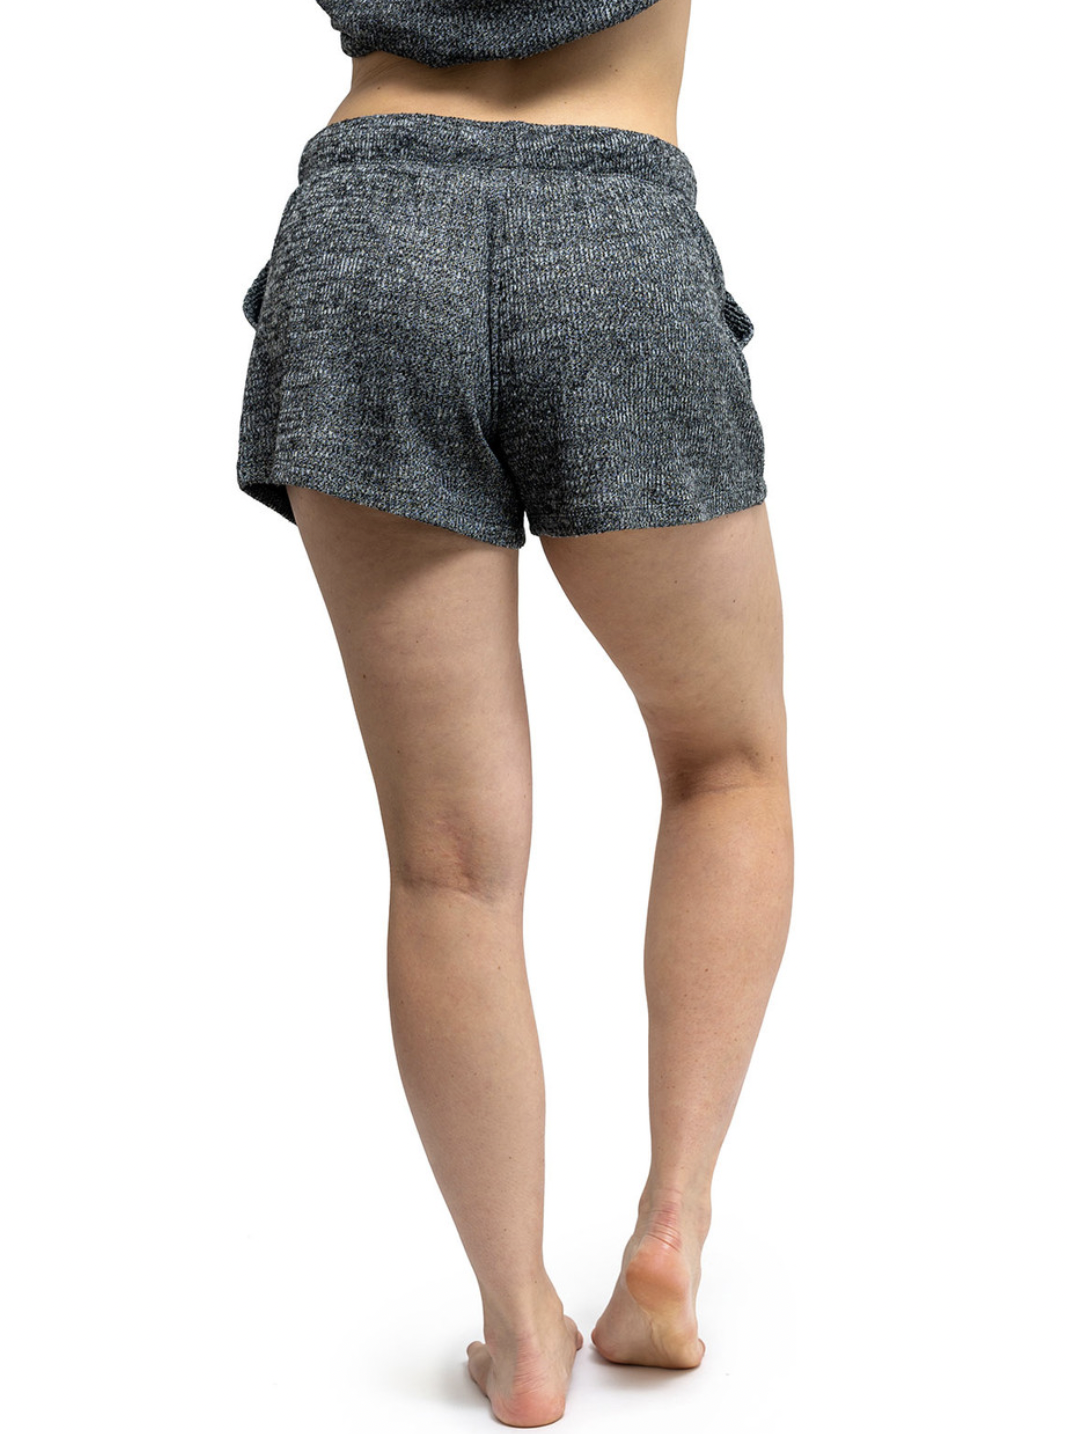 Cuddleblend Shorts